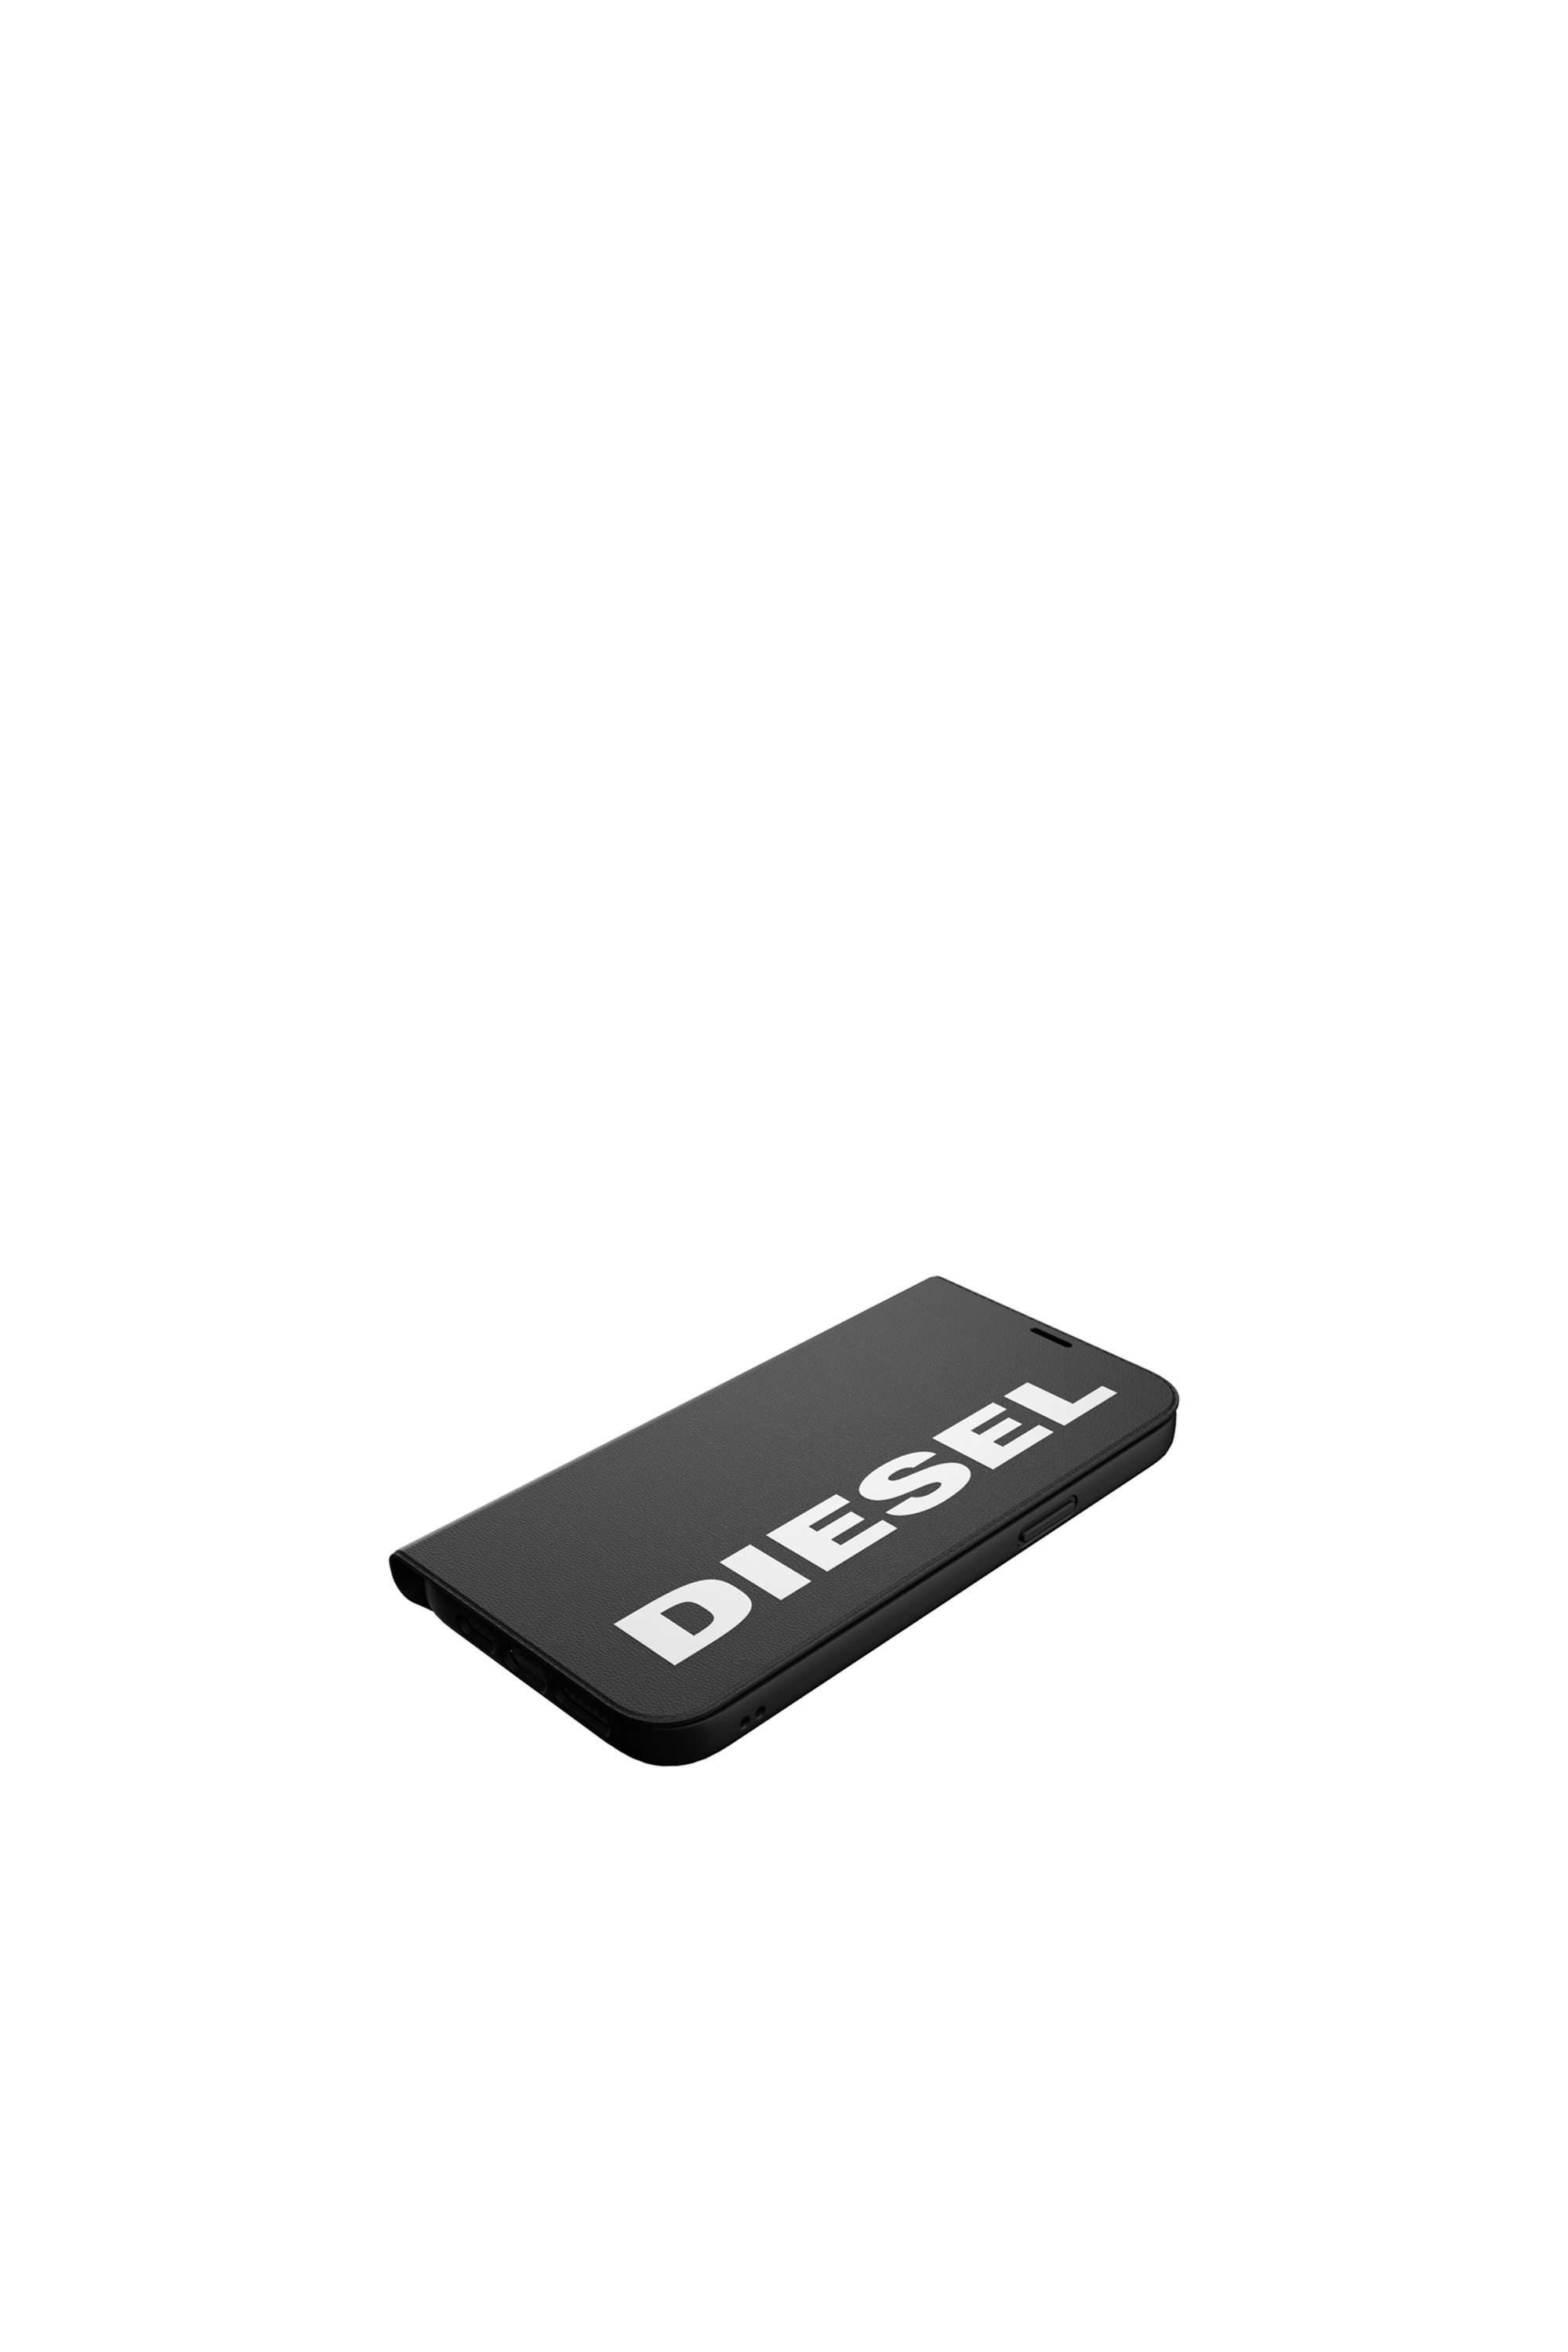 Diesel - 42487, Black - Image 4